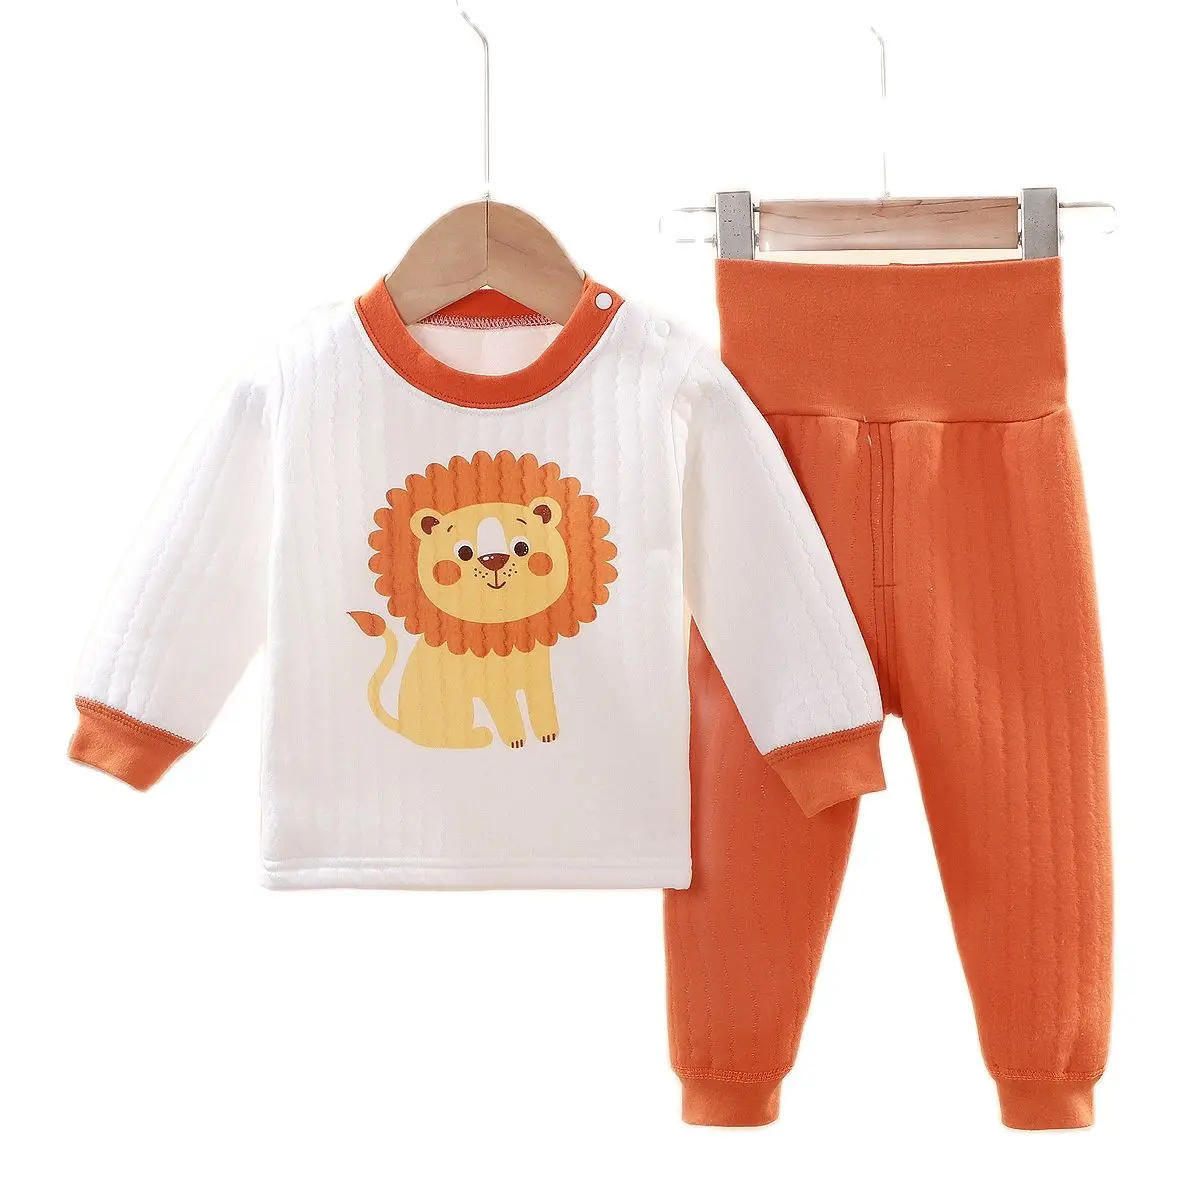 

New Children Thermal Suit Winter Thicken Warm Clothes Baby Boys Cotton Cartoon Underwear Girls High Waist Sleepwear Suit 0-4Y